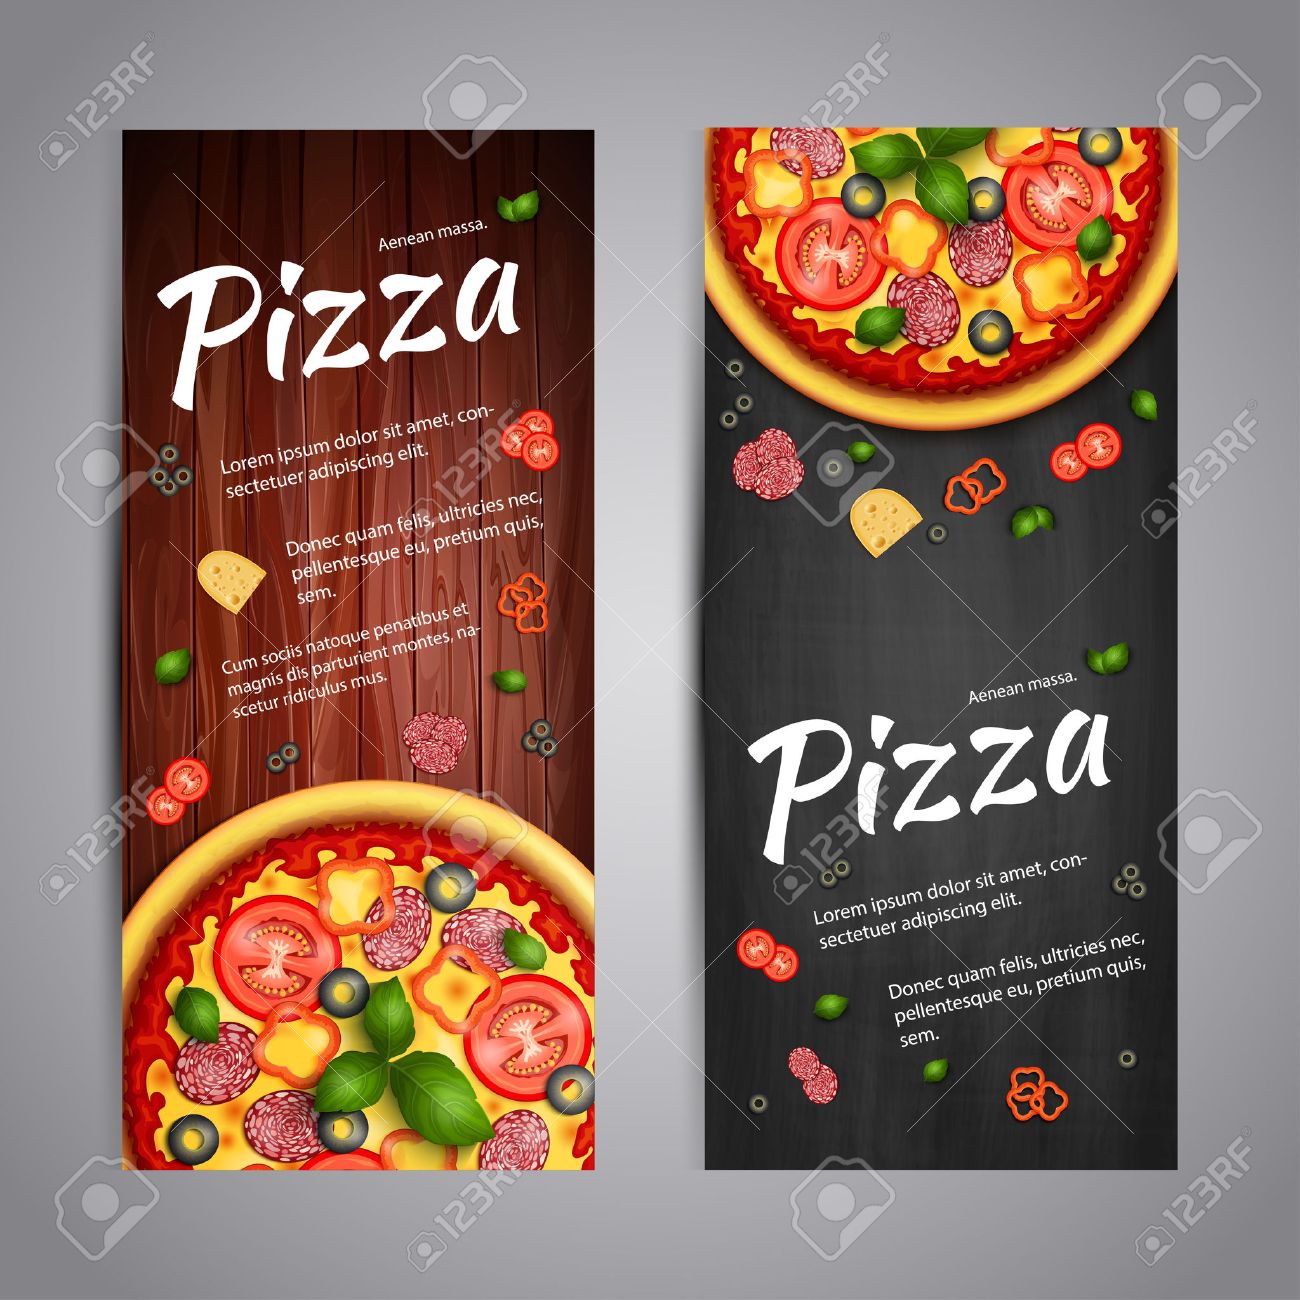 pizzacı broşür örnekleri pizza broşür el ilanı yaptır fiyat izmir